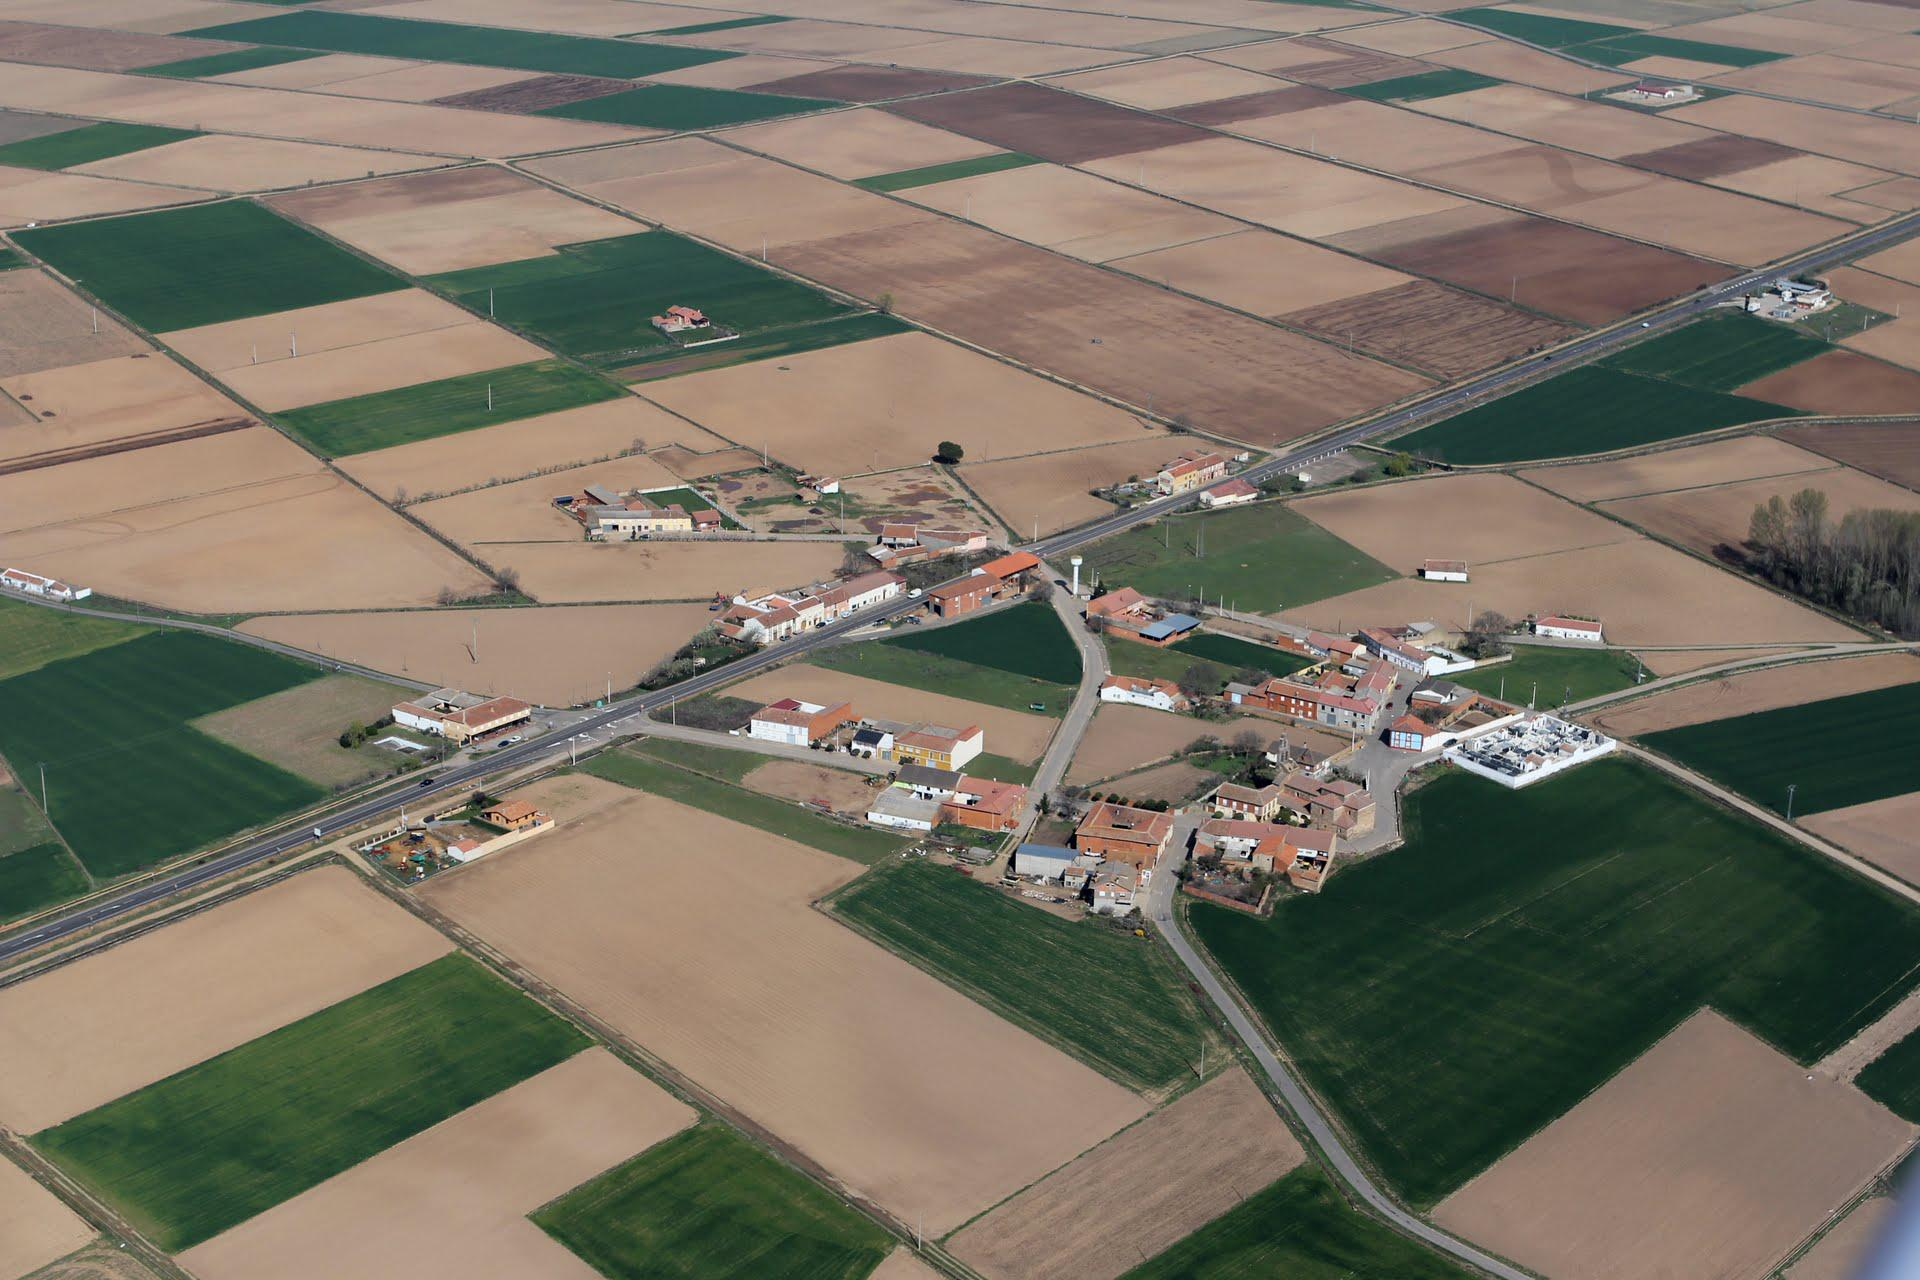 Vista aérea de San Román del Antiguo, León. SE Hoja de Astorga.